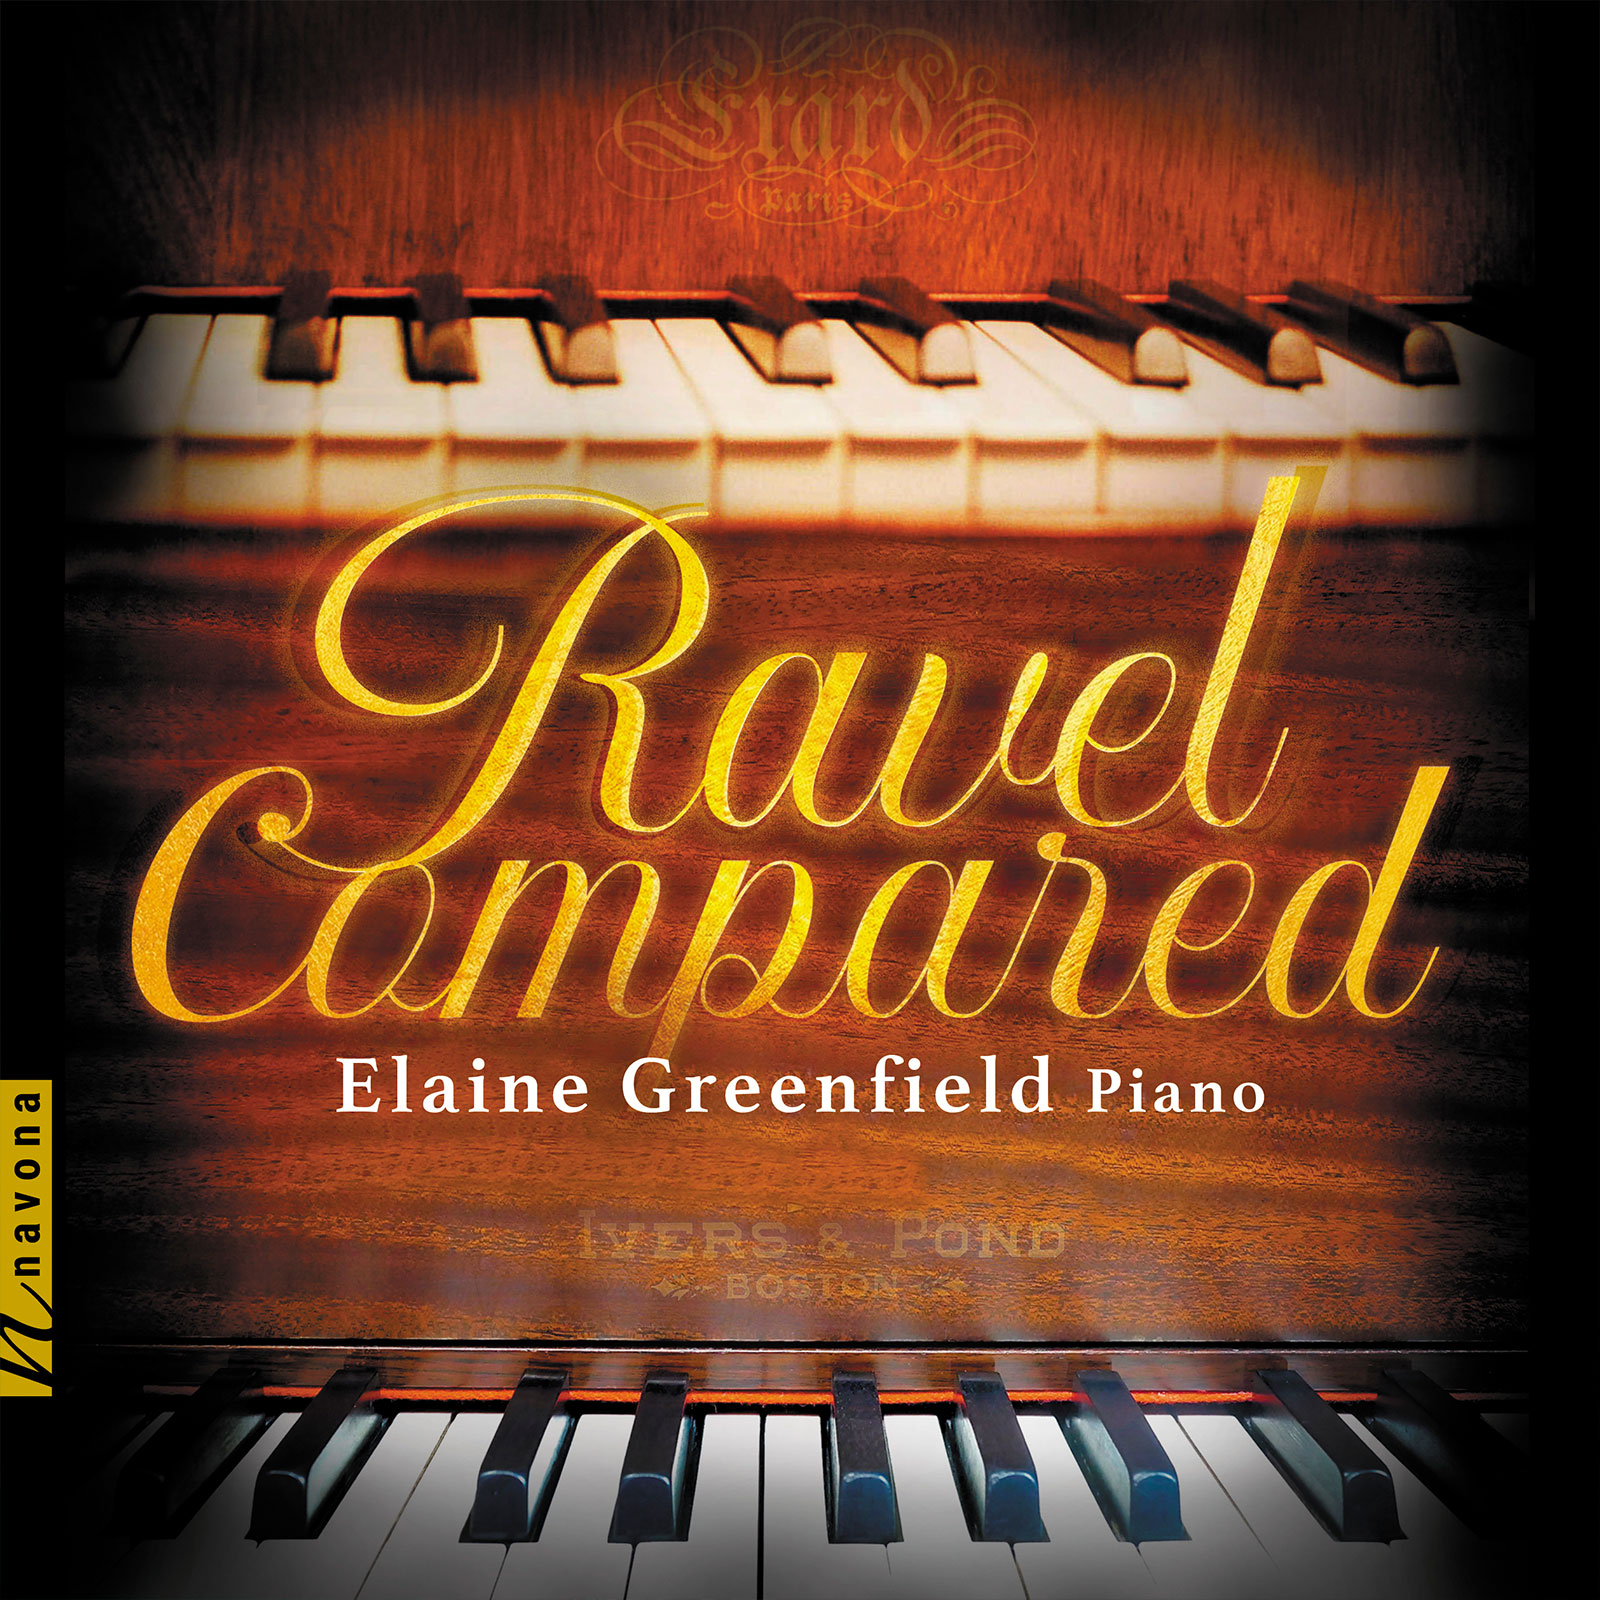 RAVEL COMPARED - Album Cover